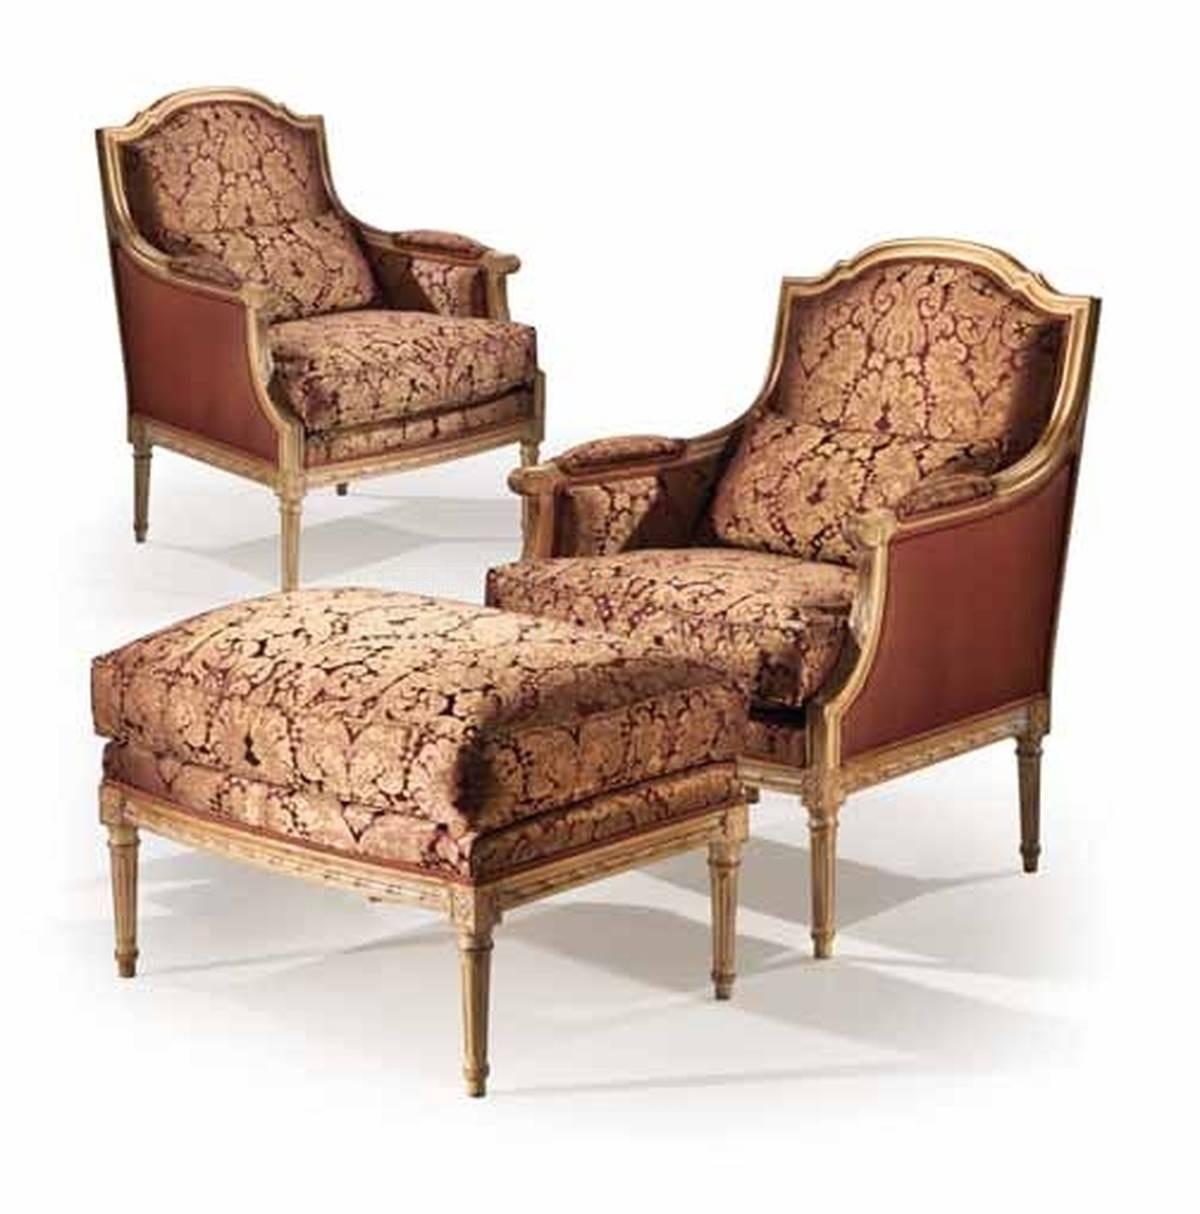 Кресло 1573/armchair из Италии фабрики ANGELO CAPPELLINI 